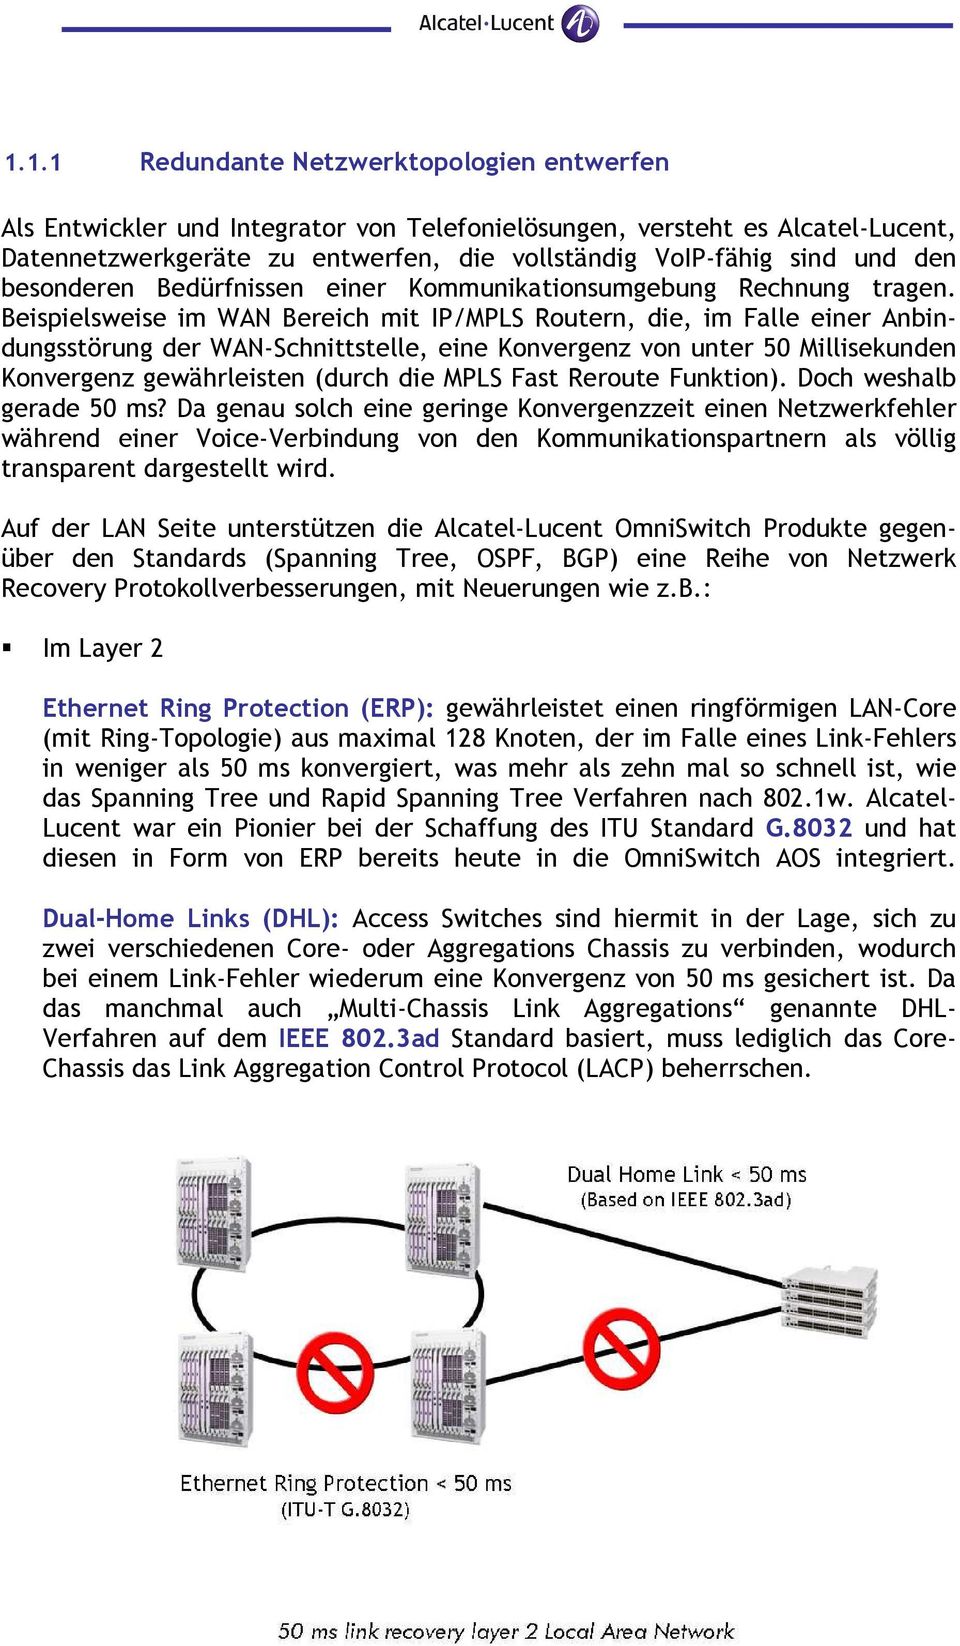 Beispielsweise im WAN Bereich mit IP/MPLS Routern, die, im Falle einer Anbindungsstörung der WAN-Schnittstelle, eine Konvergenz von unter 50 Millisekunden Konvergenz gewährleisten (durch die MPLS